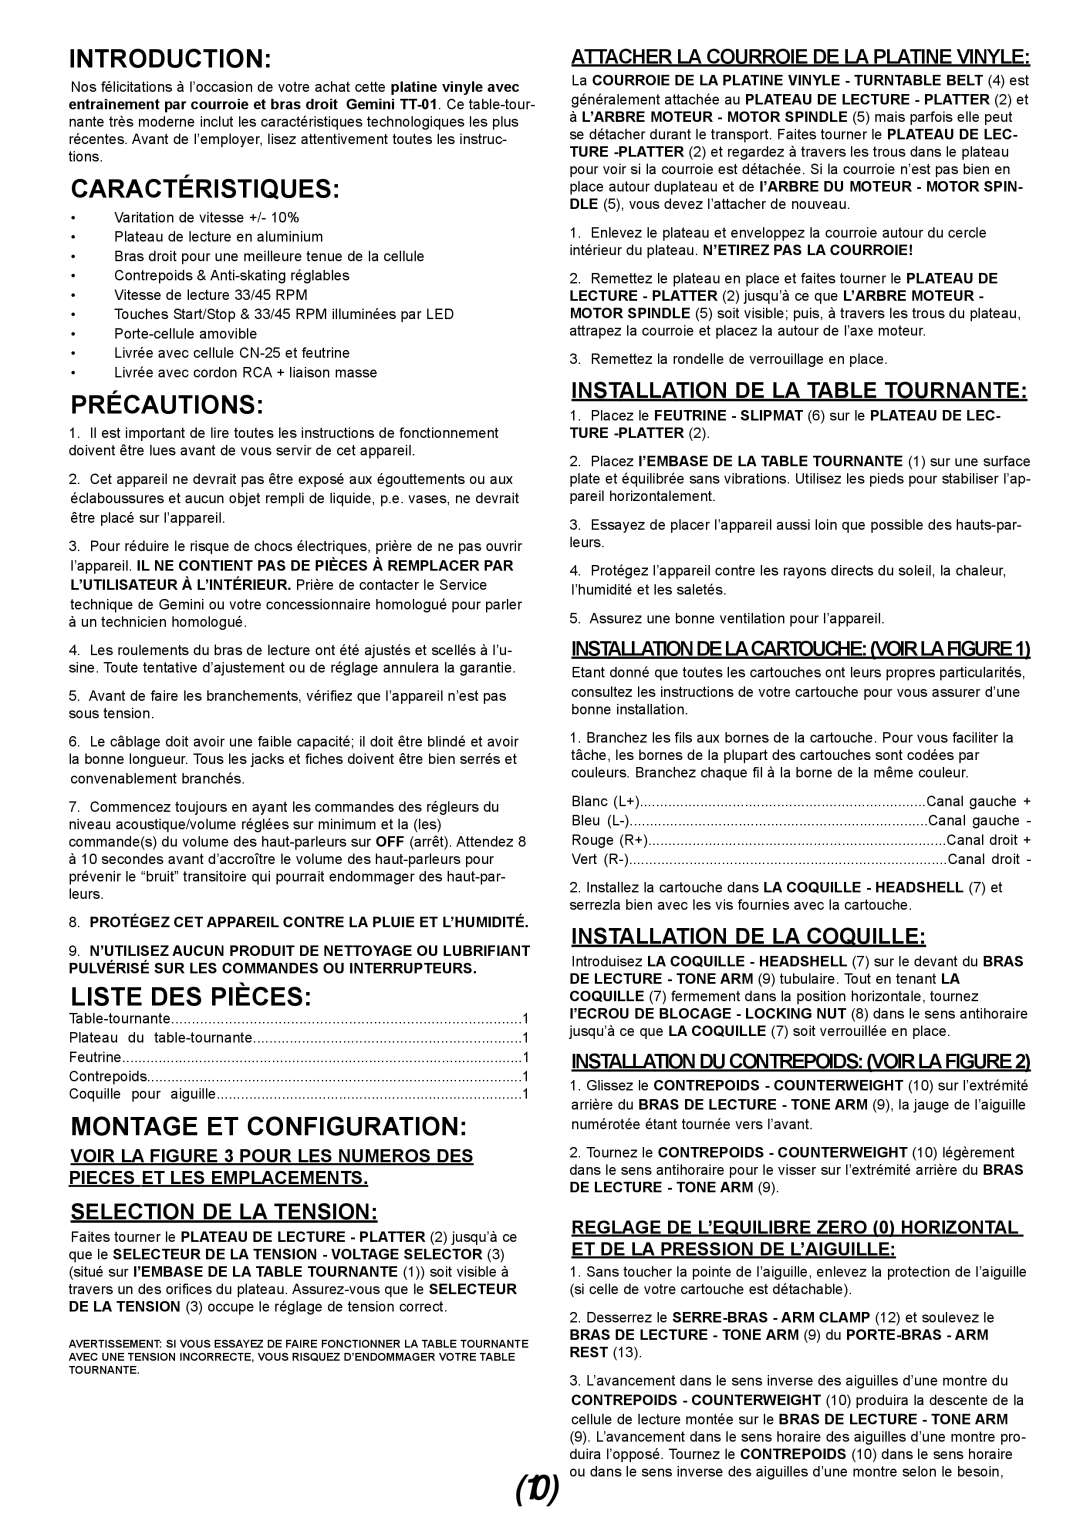 Gemini TT-01 manual Caractéristiques, Précautions, Liste Des Pièces, Montage Et Configuration, Selection De La Tension 